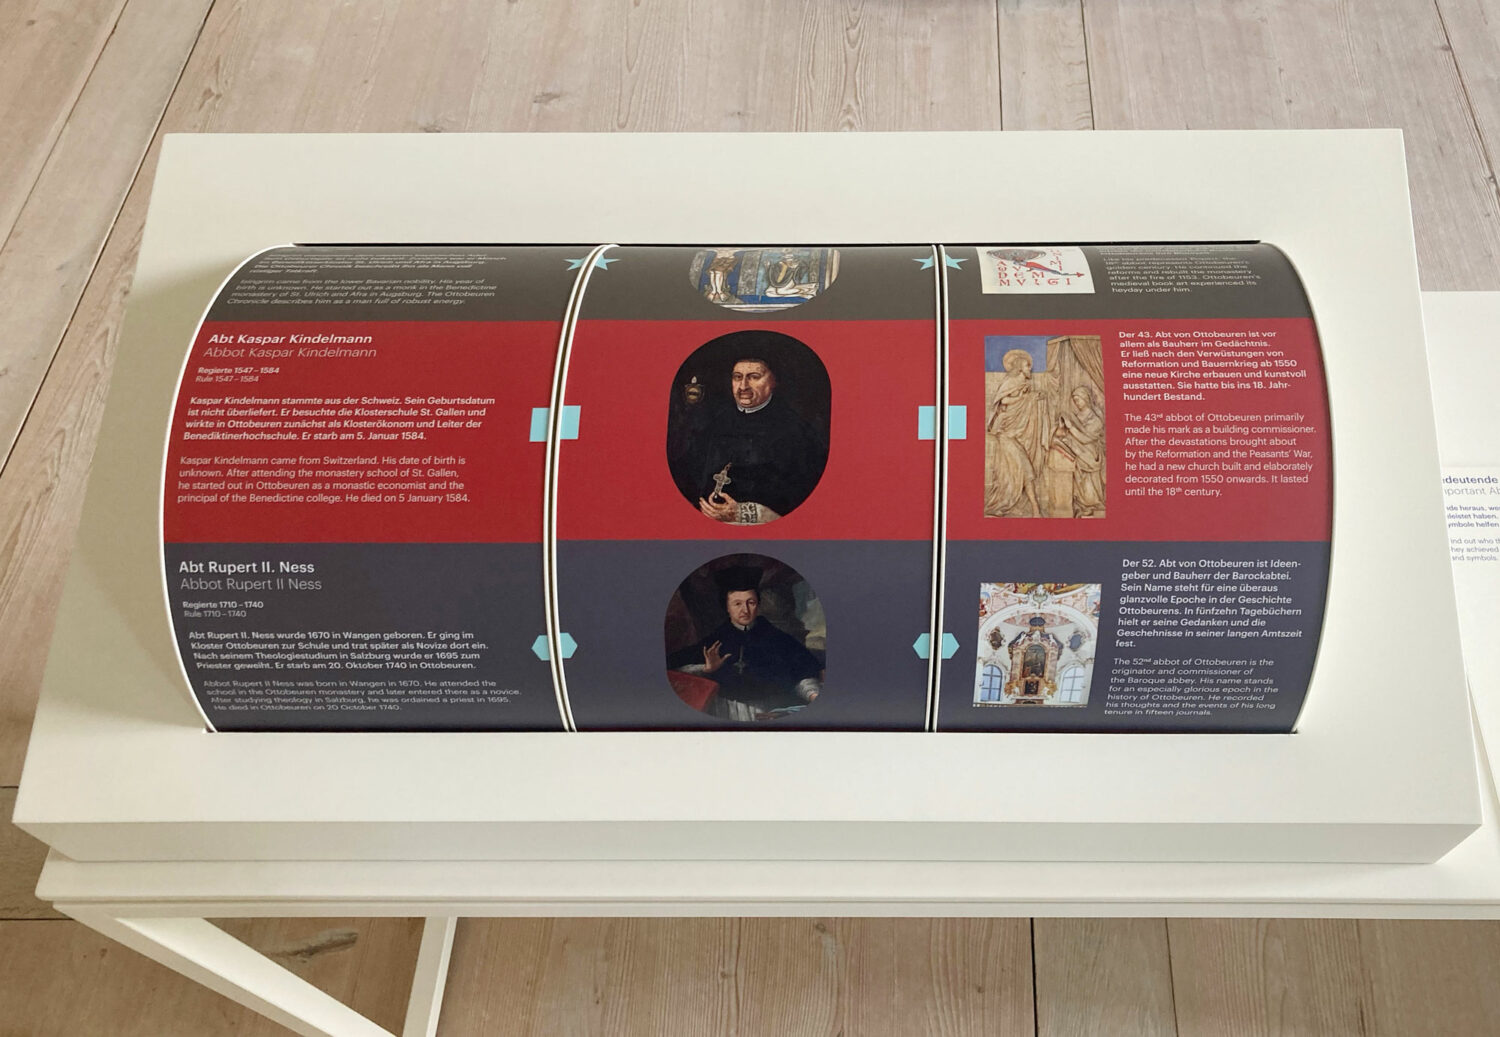 Eva Plass: <strong>Benediktiner Abtei Ottobeuren Museum</strong><br> – Ausstellungsgrafik + Signaletik / Ottobeuren 2020 – 2023